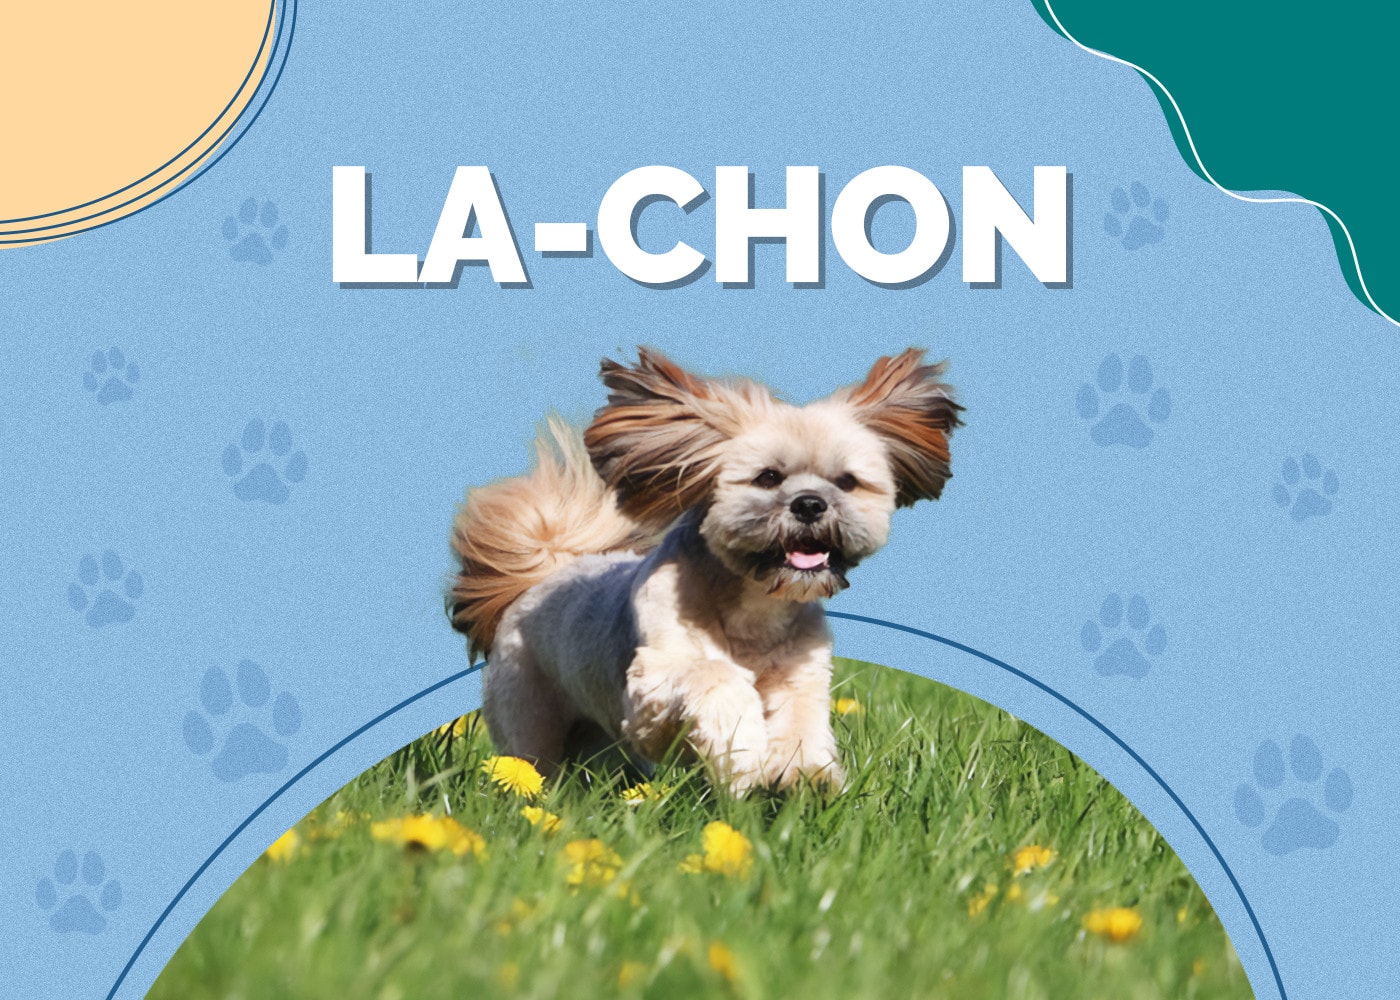 La-Chon (Bichon Frise & Lhasa Apso Mix)